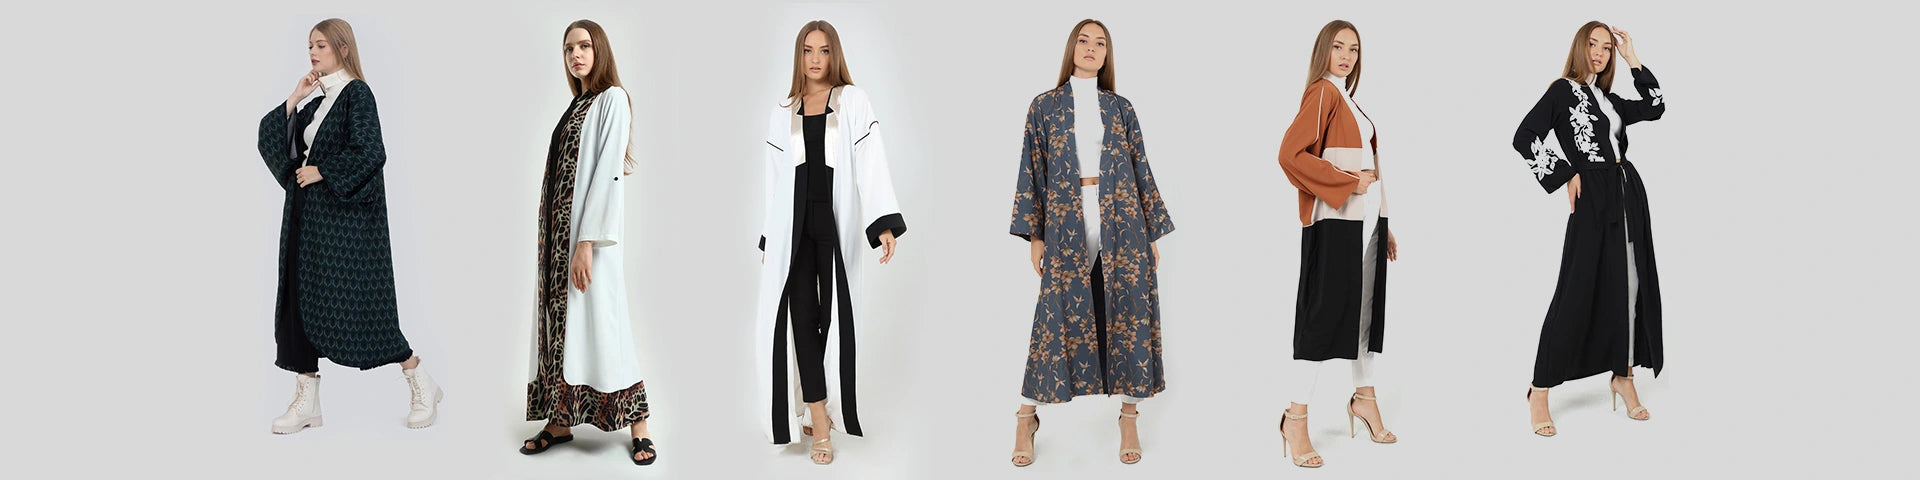 women kimonos uk